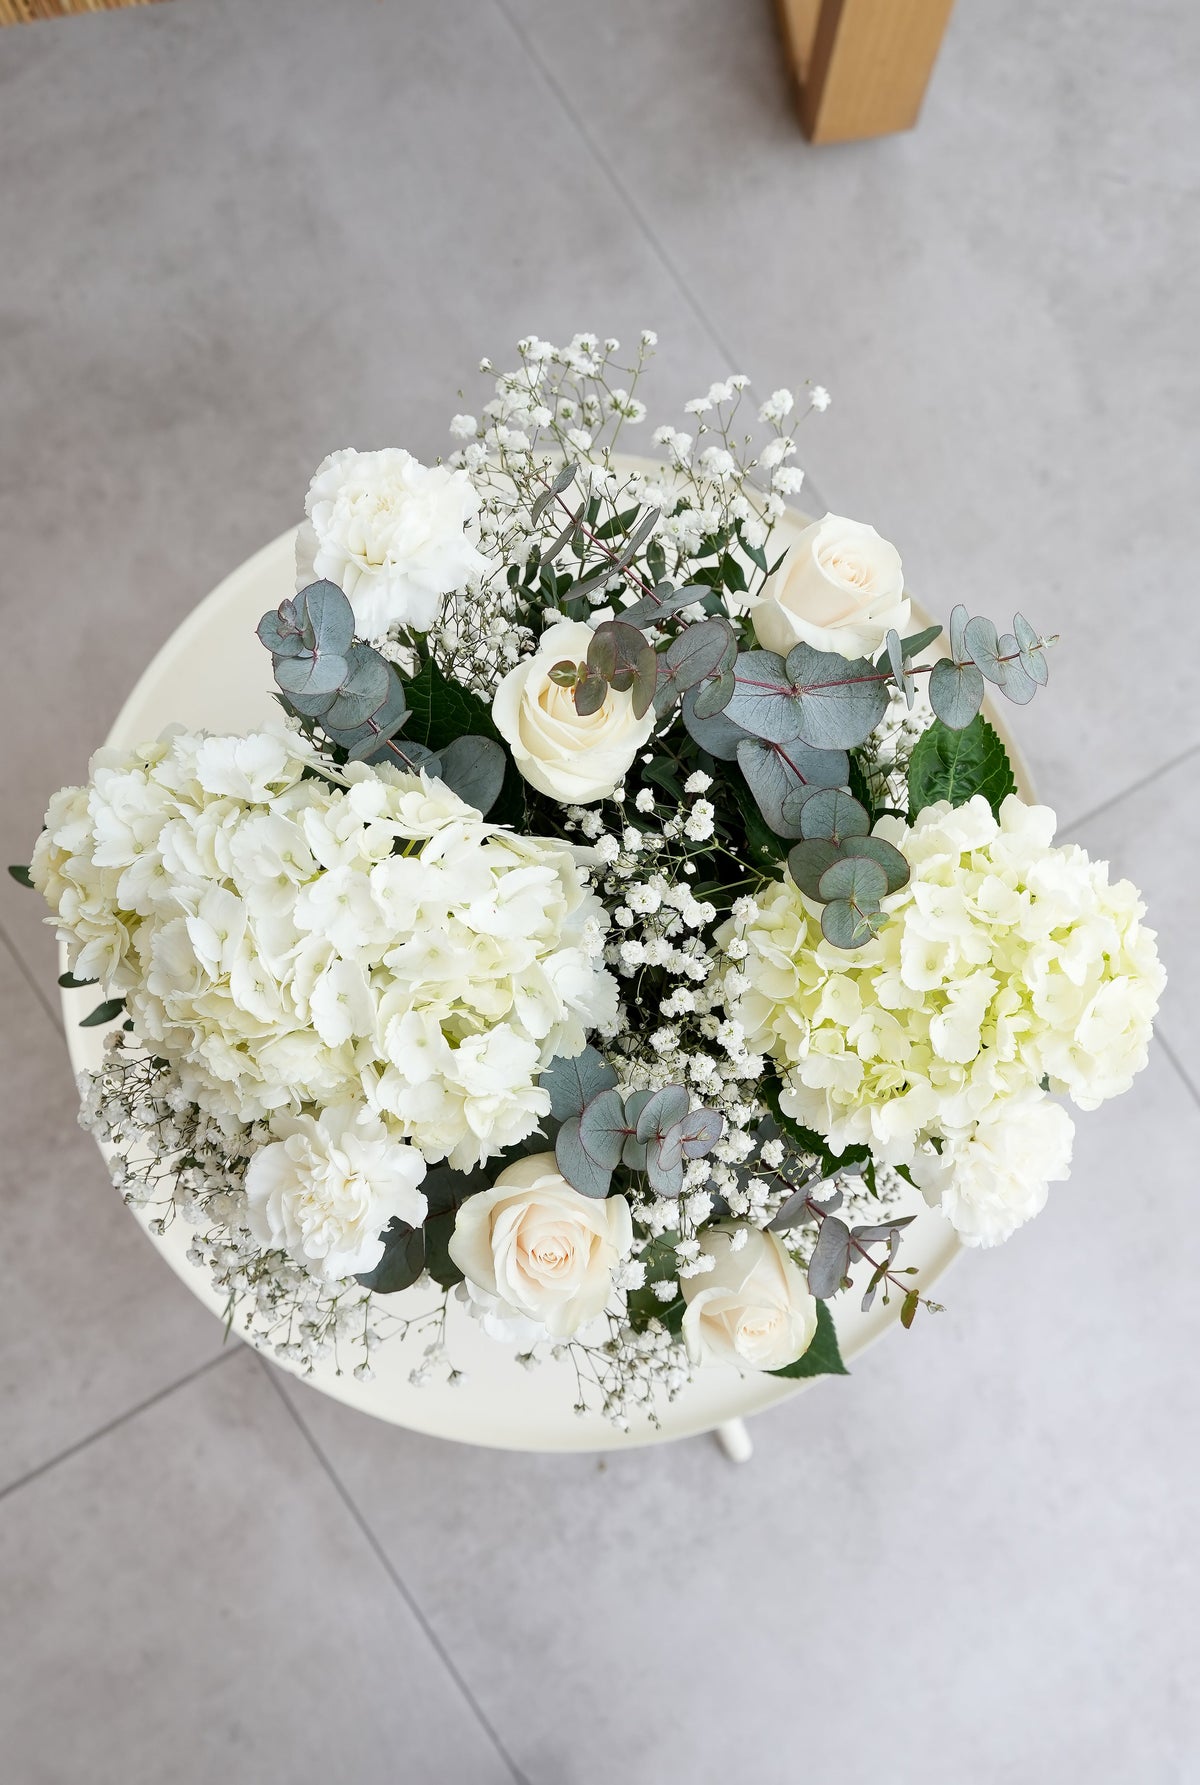 Anniversary Perfect White - Vase